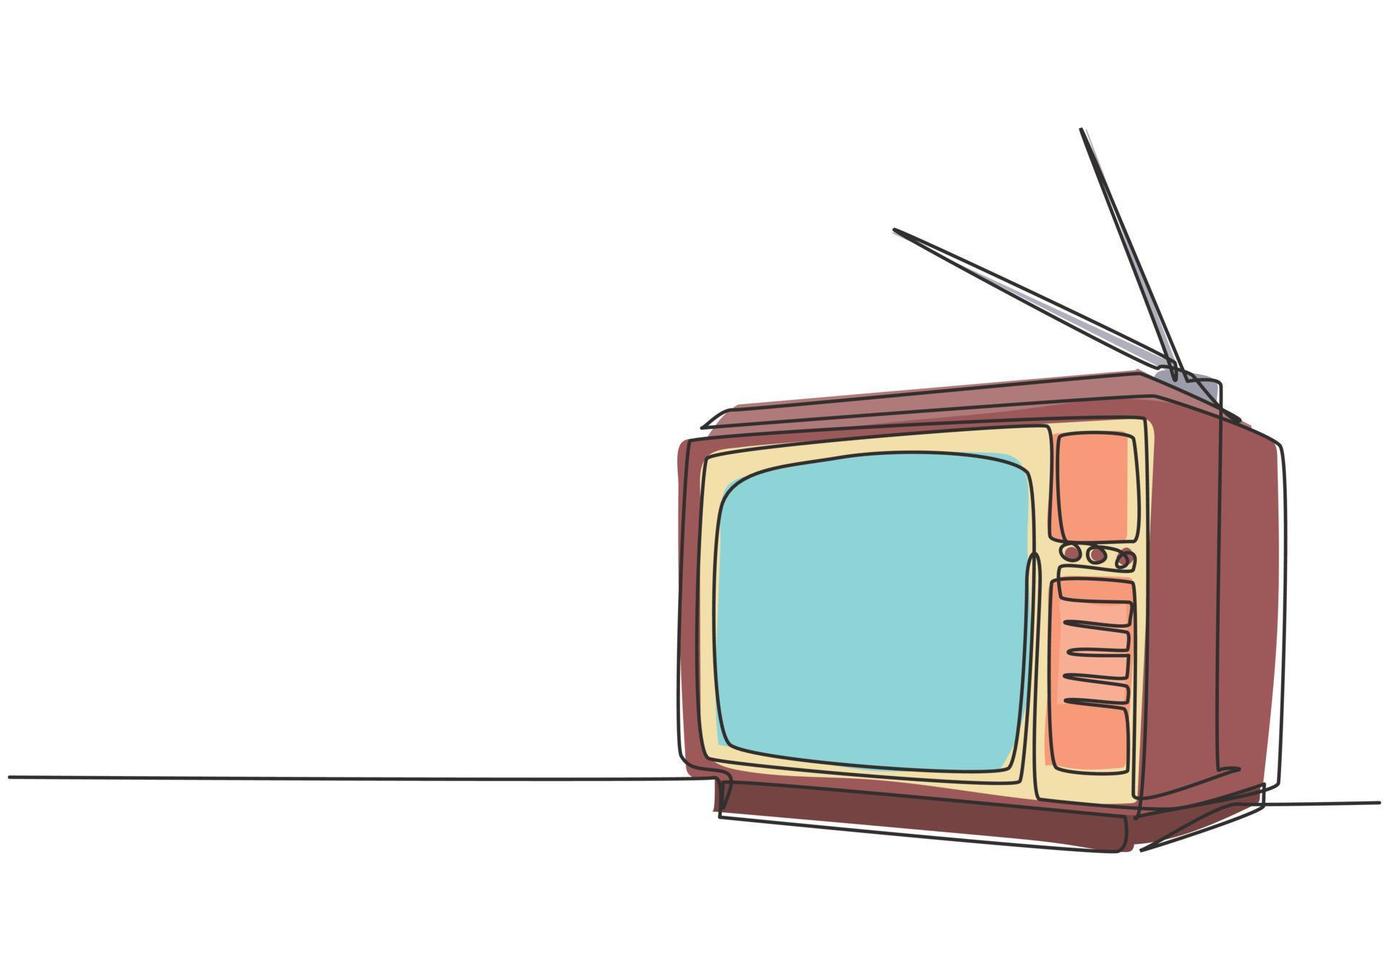 Eine durchgehende Strichzeichnung eines altmodischen Retro-Fernsehers mit Holzgehäuse und interner Antenne. klassisches analoges Vintage-Fernsehkonzept Single-Line-Draw-Design-Vektorgrafik-Illustration vektor